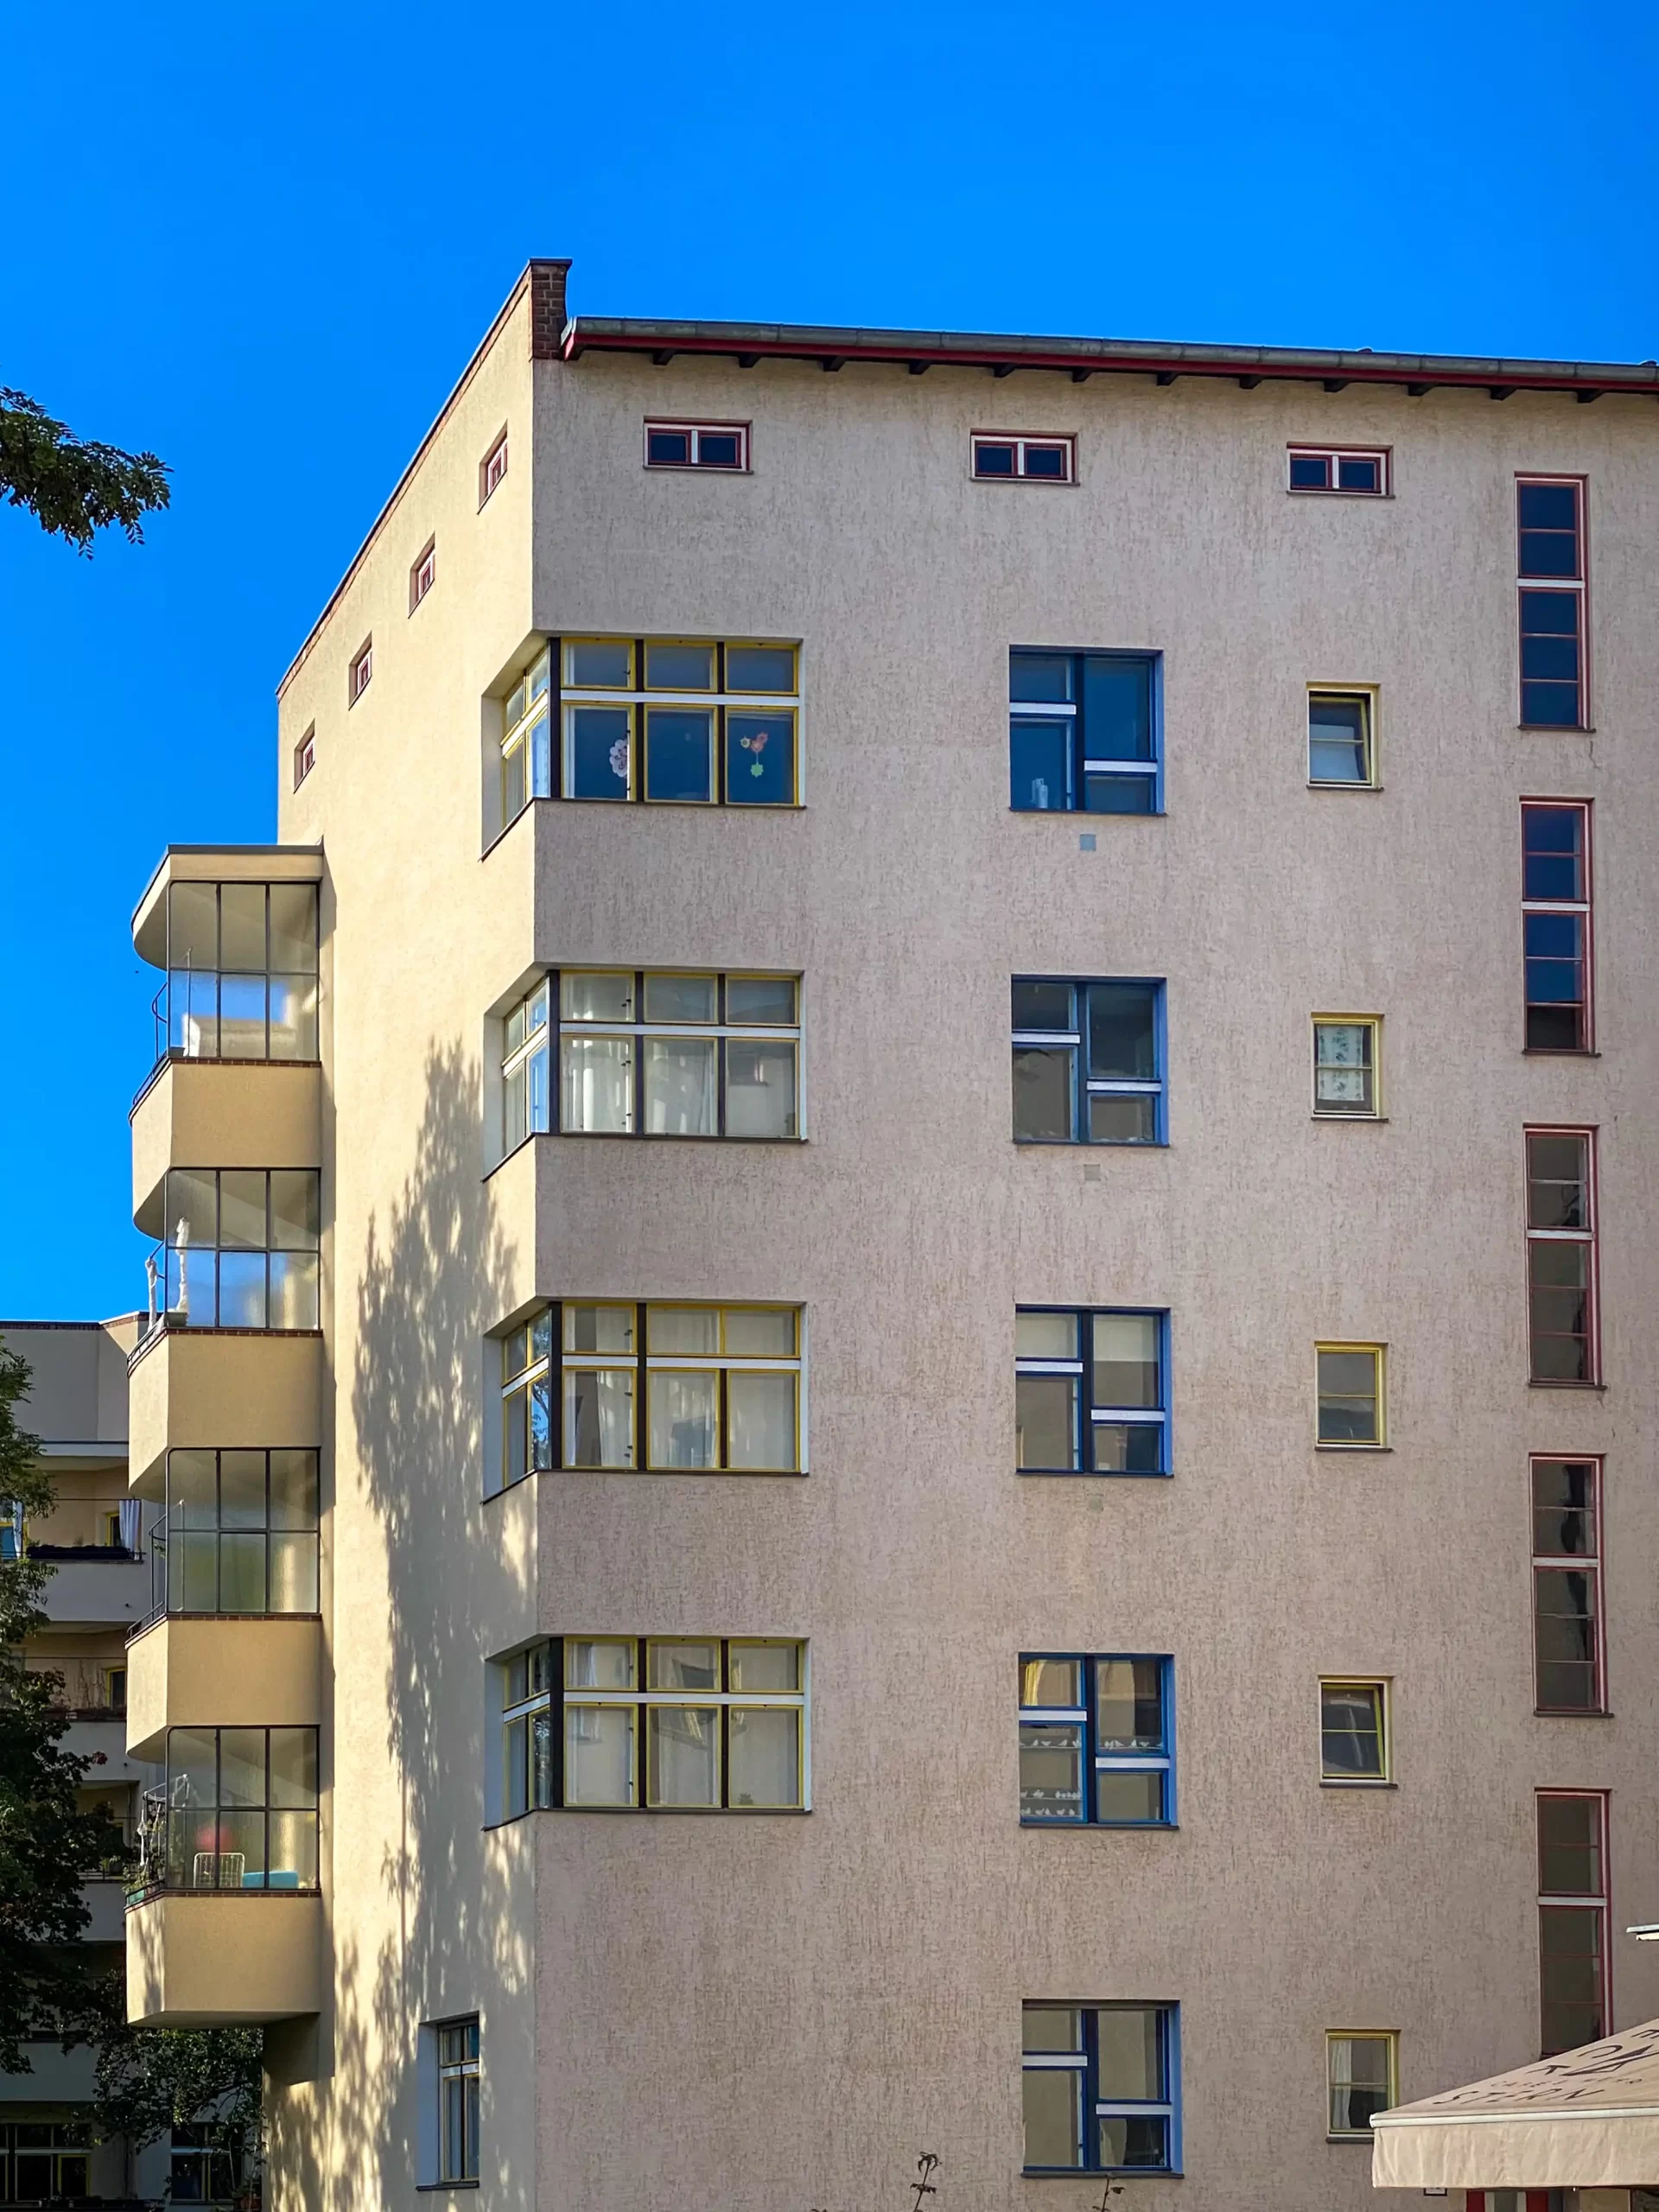 Wohnstadt Carl Legien, 1928-1930. Architekten: Bruno Taut, Franz Hillinger. Foto: Daniela Christmann